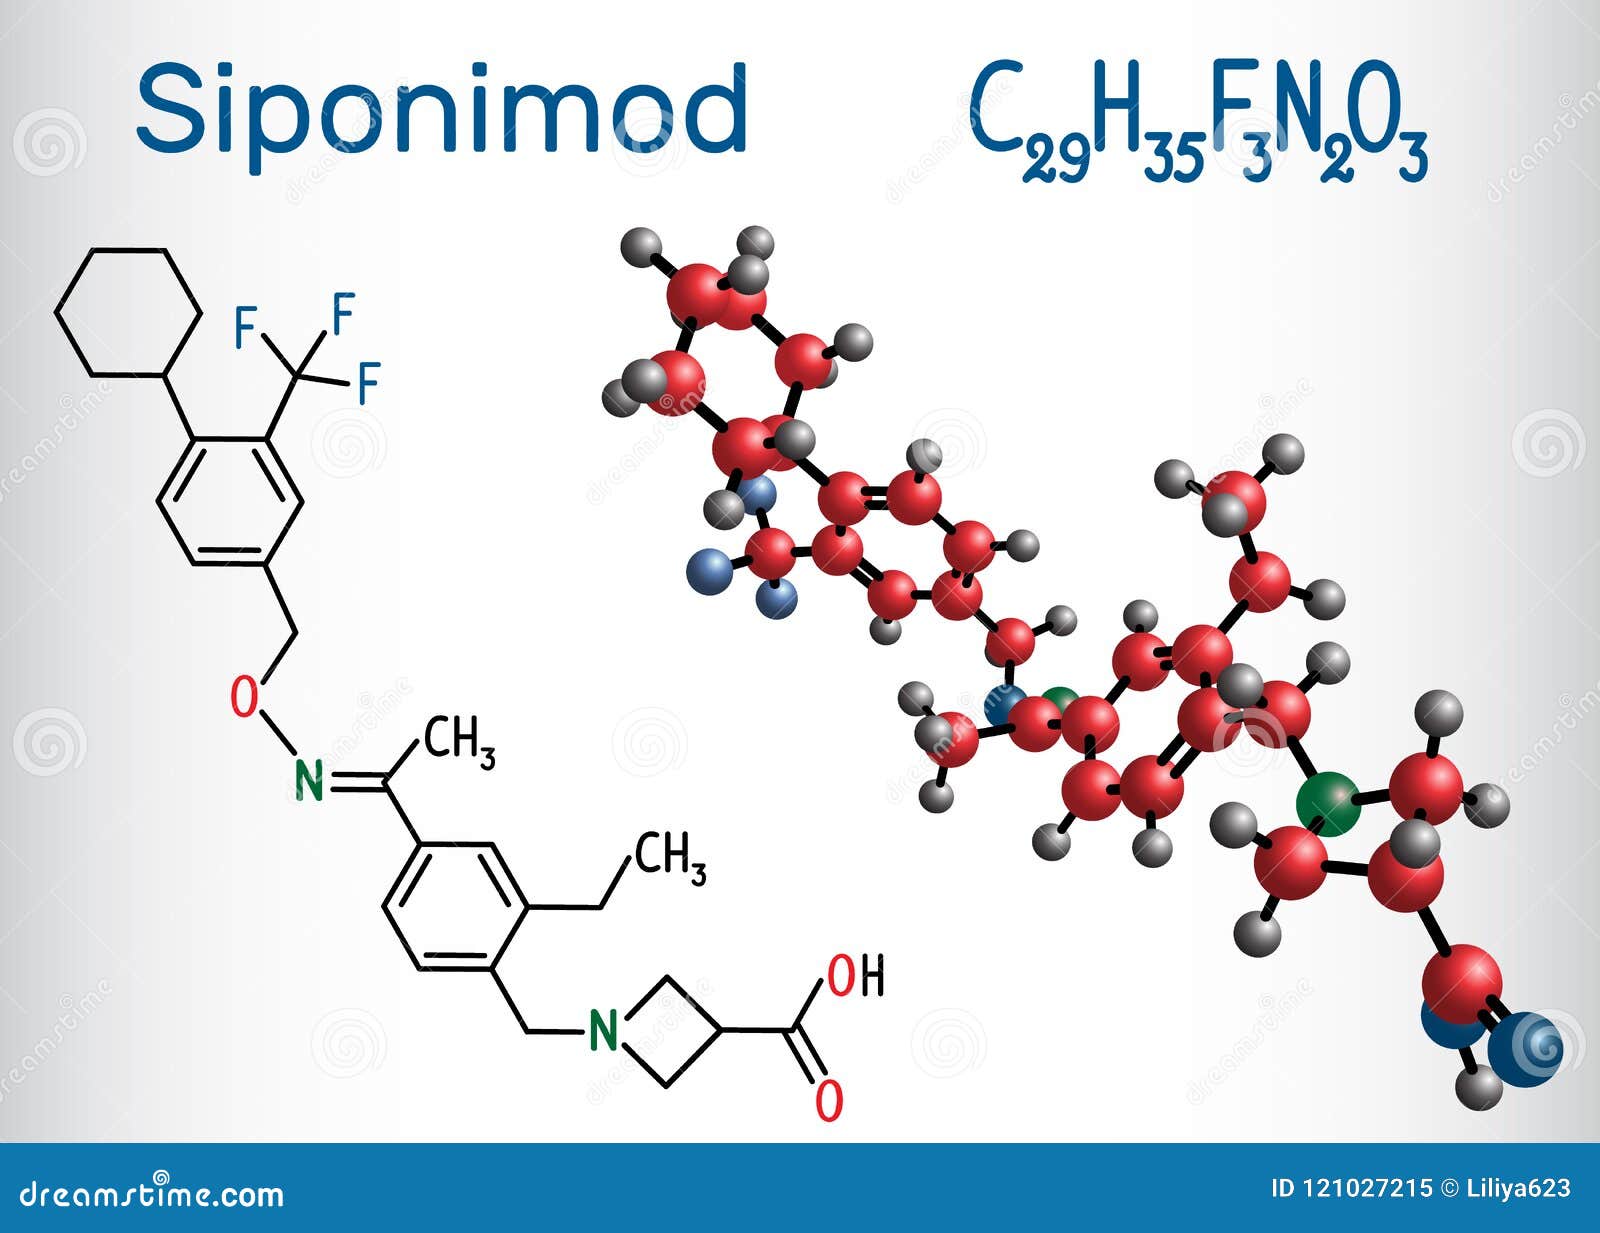 siponimod s1pr1 modulator molecule. structural chemical formul